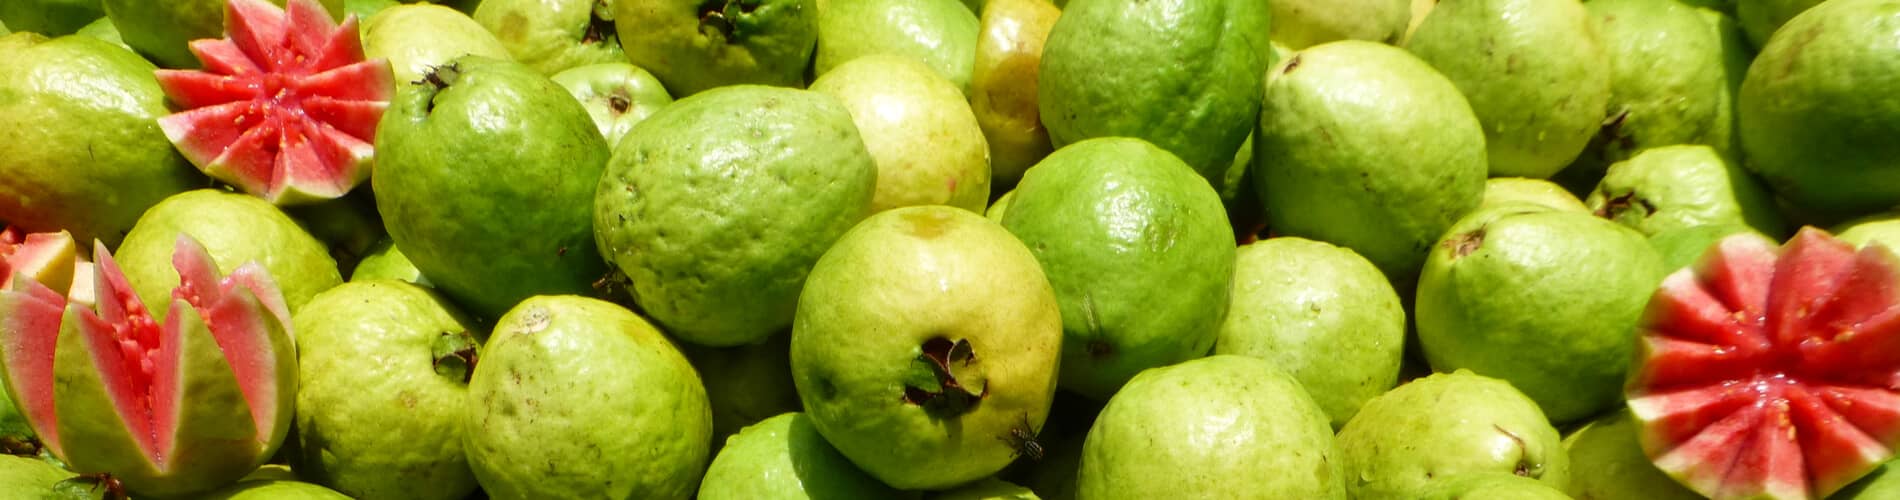 Guave: Myrtengewächs mit köstlichen Früchten